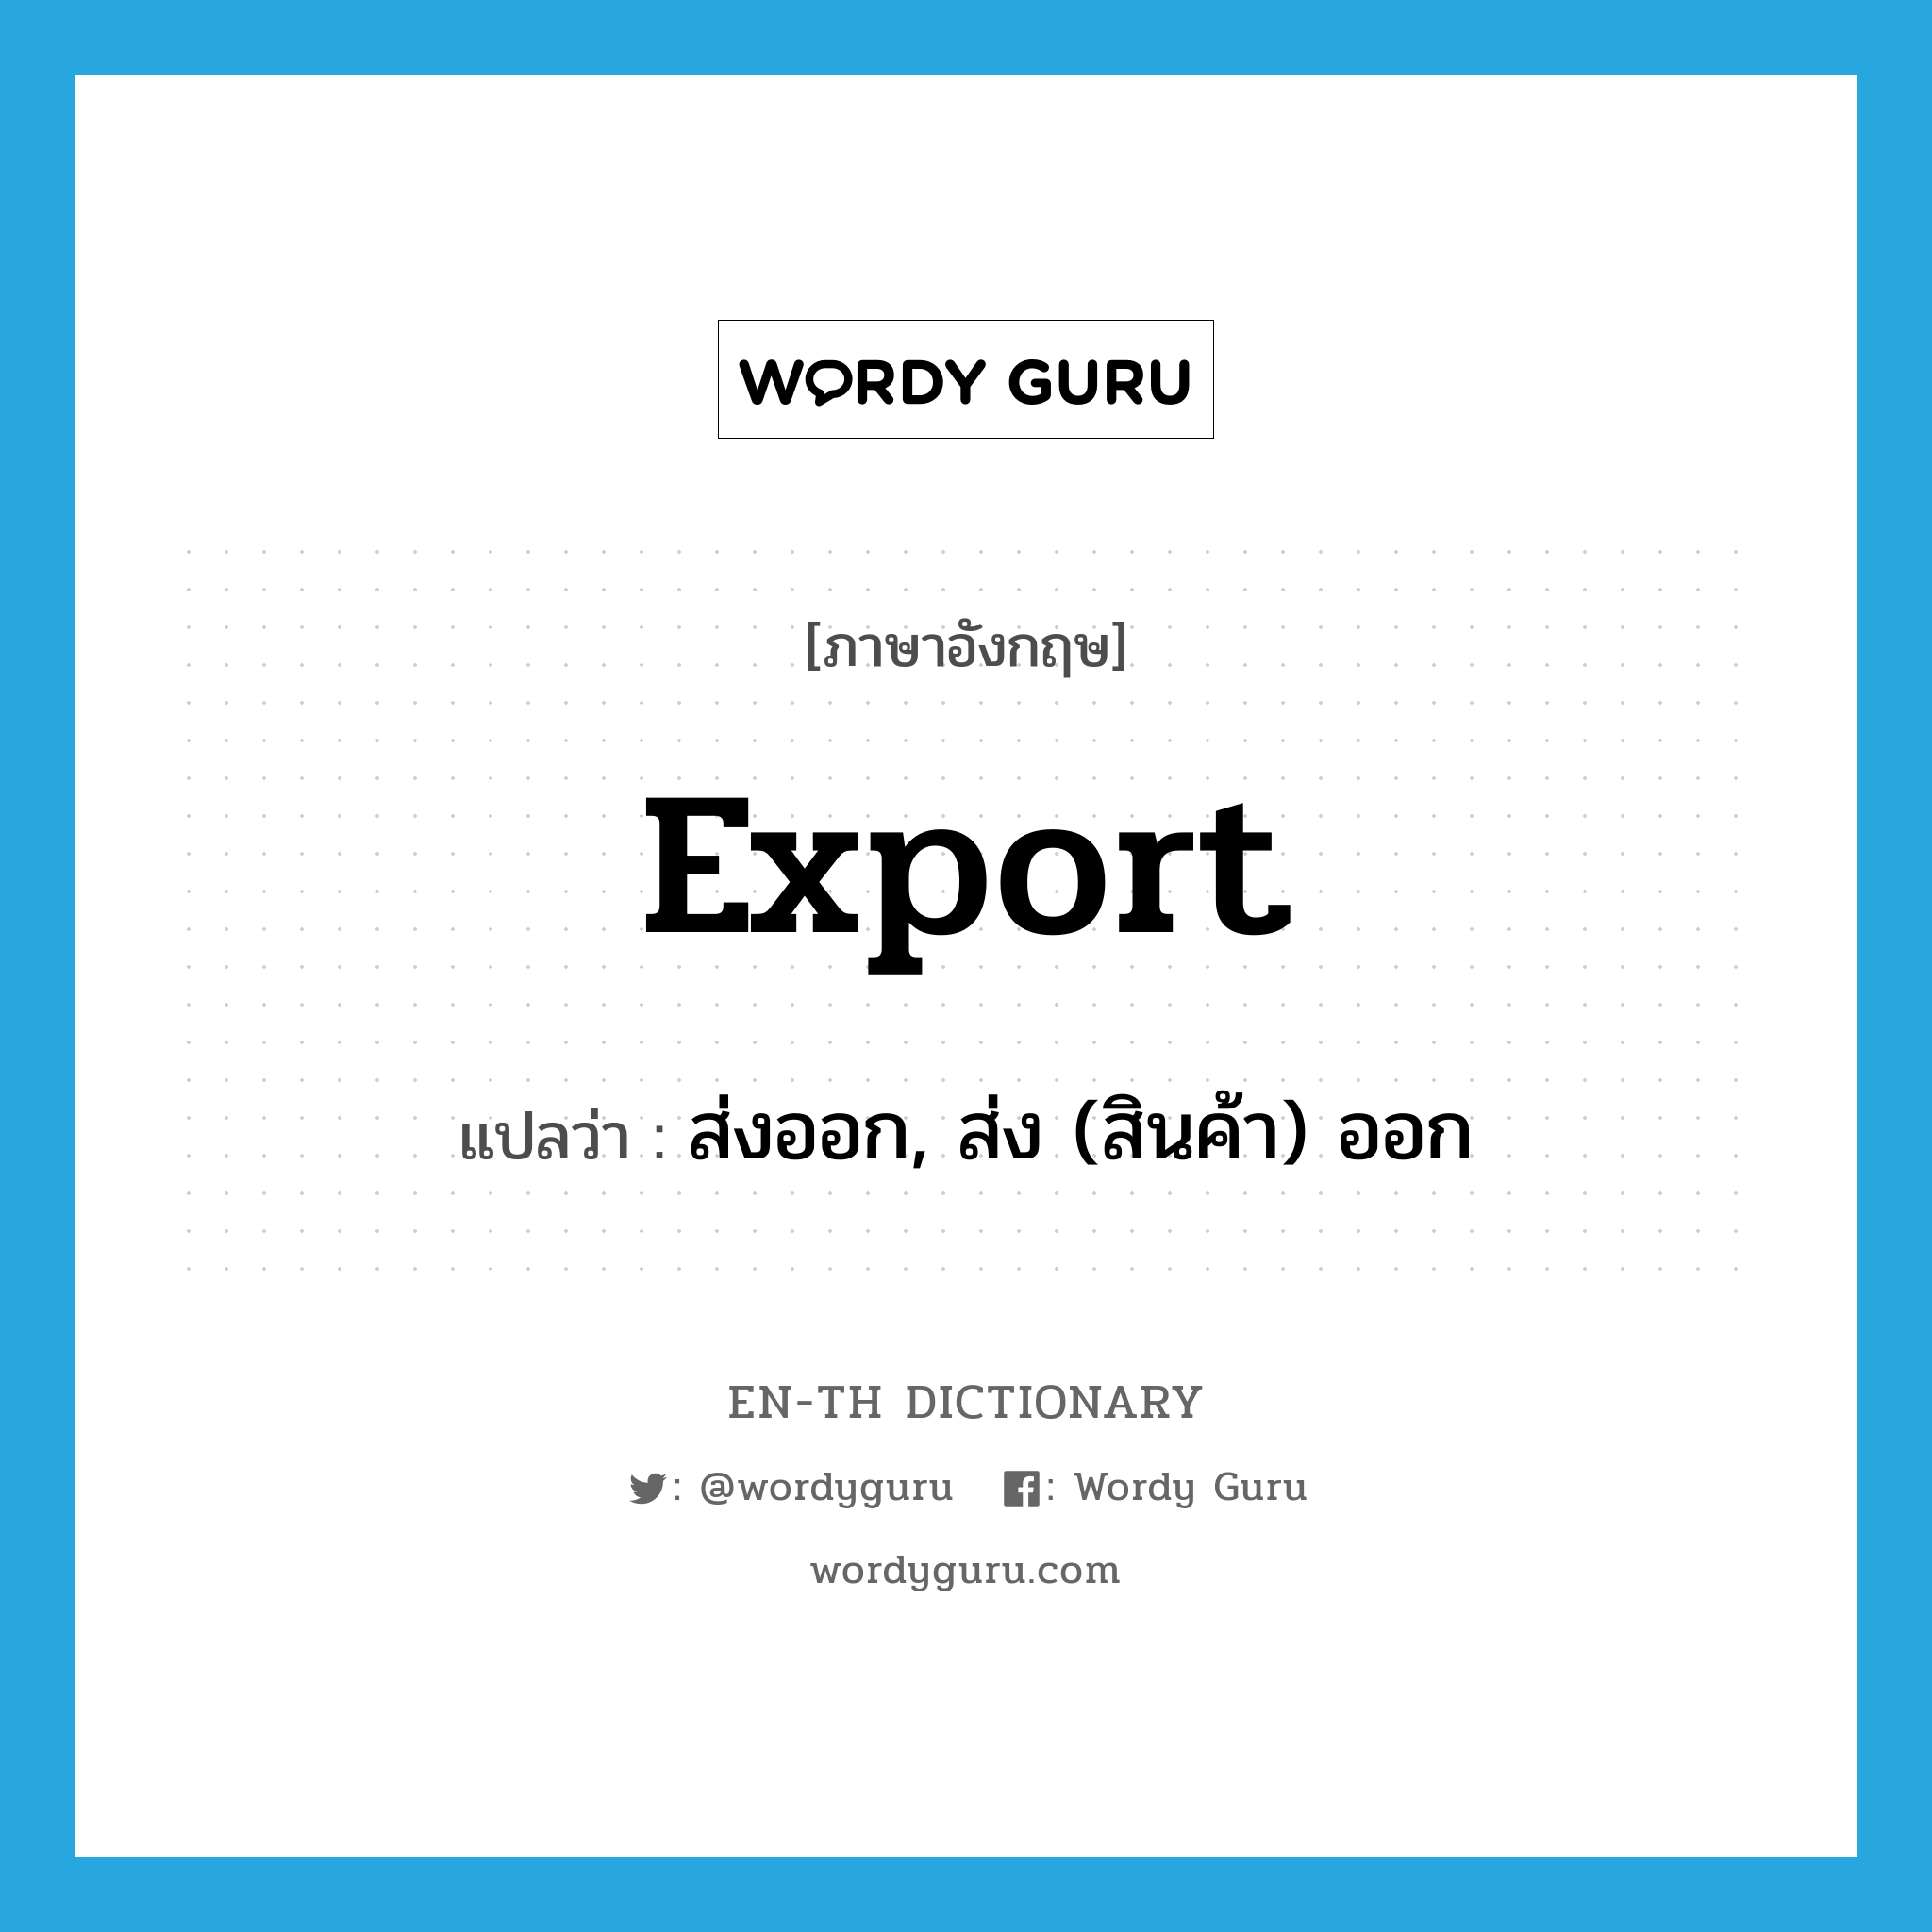 ส่งออก, ส่ง (สินค้า) ออก ภาษาอังกฤษ?, คำศัพท์ภาษาอังกฤษ ส่งออก, ส่ง (สินค้า) ออก แปลว่า export ประเภท VI หมวด VI